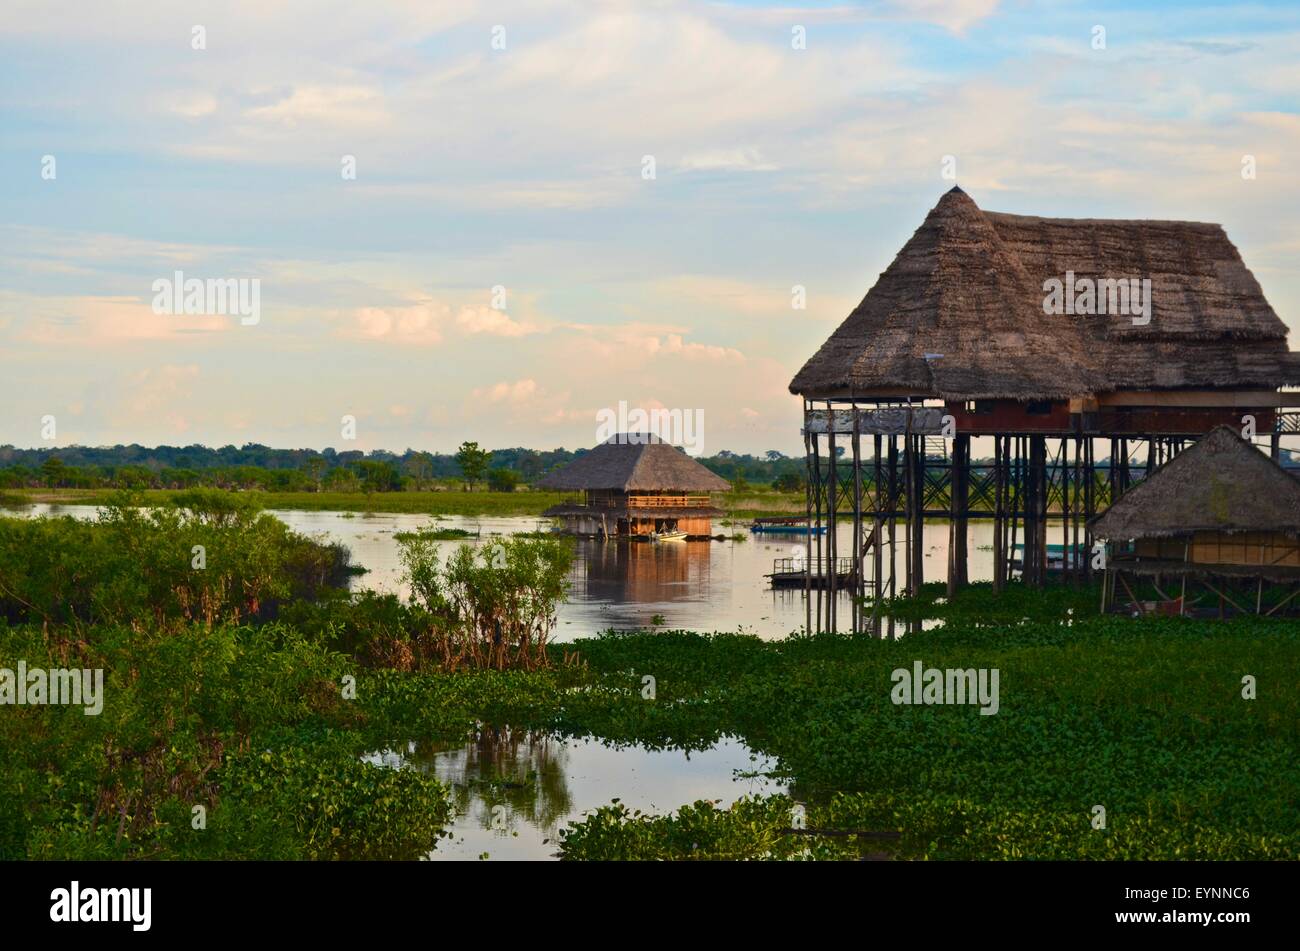 Le case galleggianti sul fiume Itaya, a Iquitos, nell'Amazzonia peruviana Foto Stock